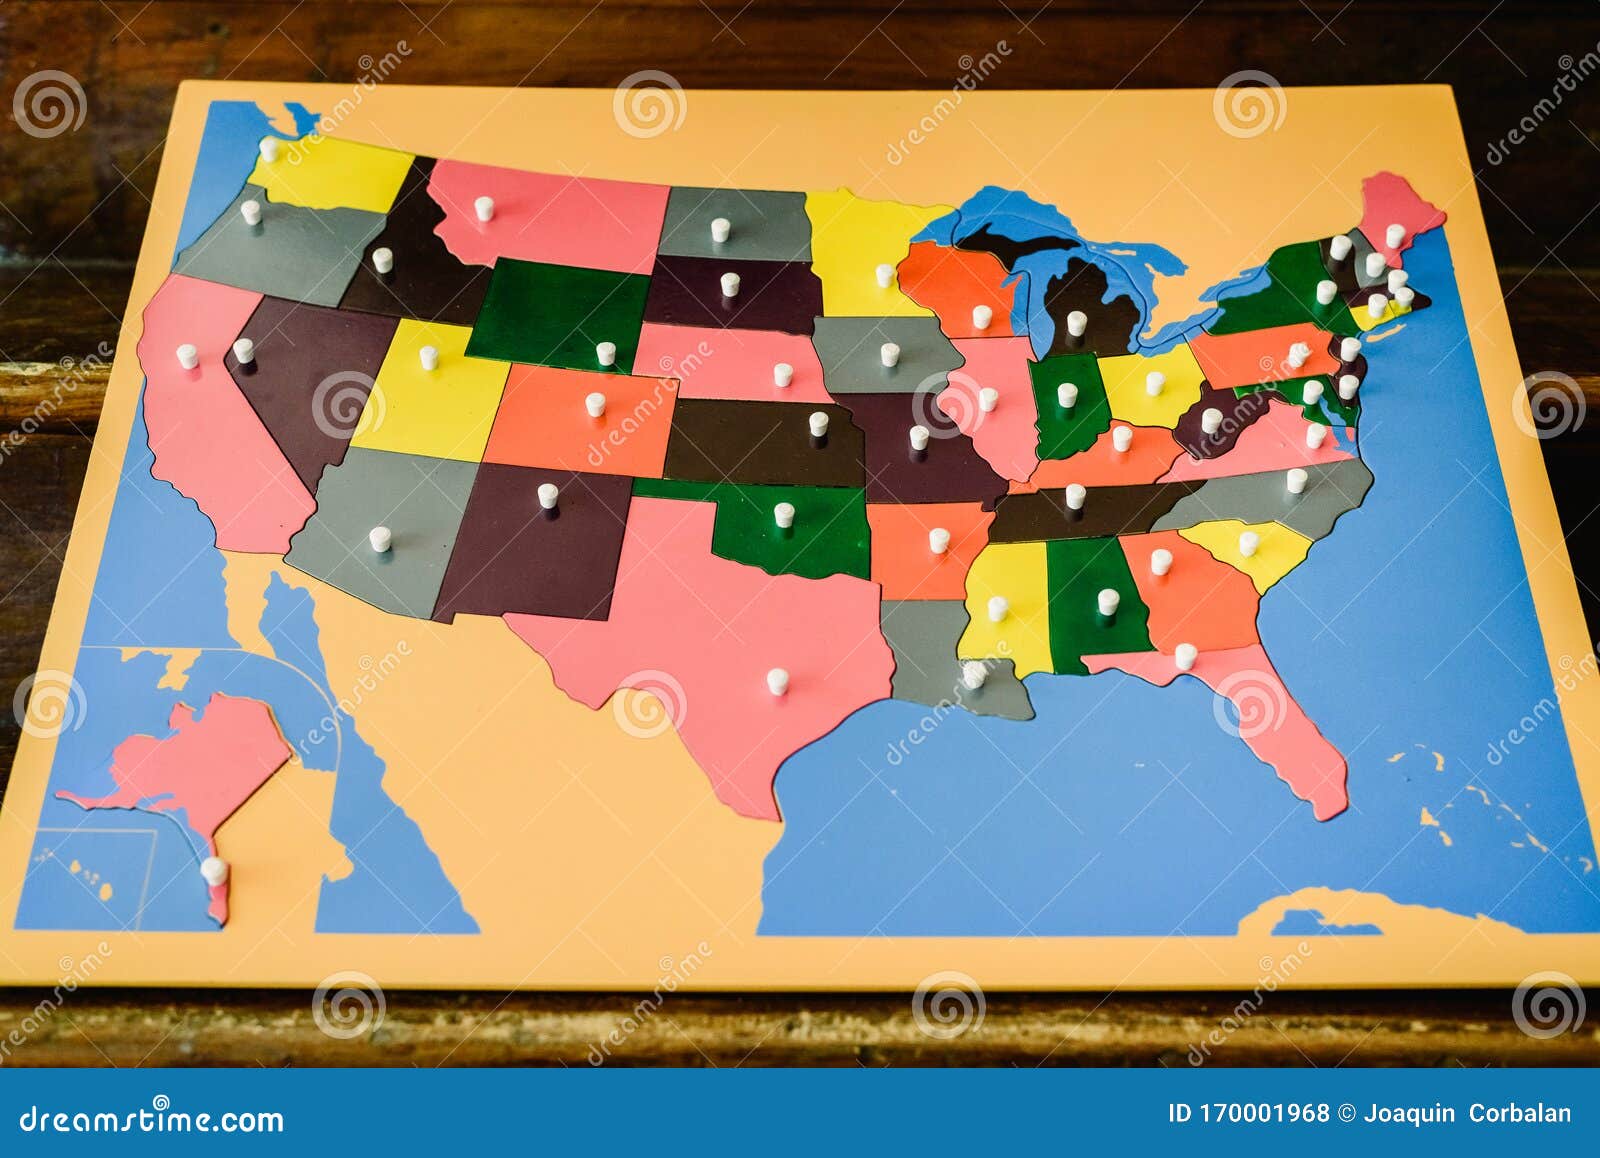 Rompecabezas Con Mapa De Los Estados De Los Estados Unidos De América En Un De Montessori Foto de archivo - Imagen de luisiana, concepto: 170001968